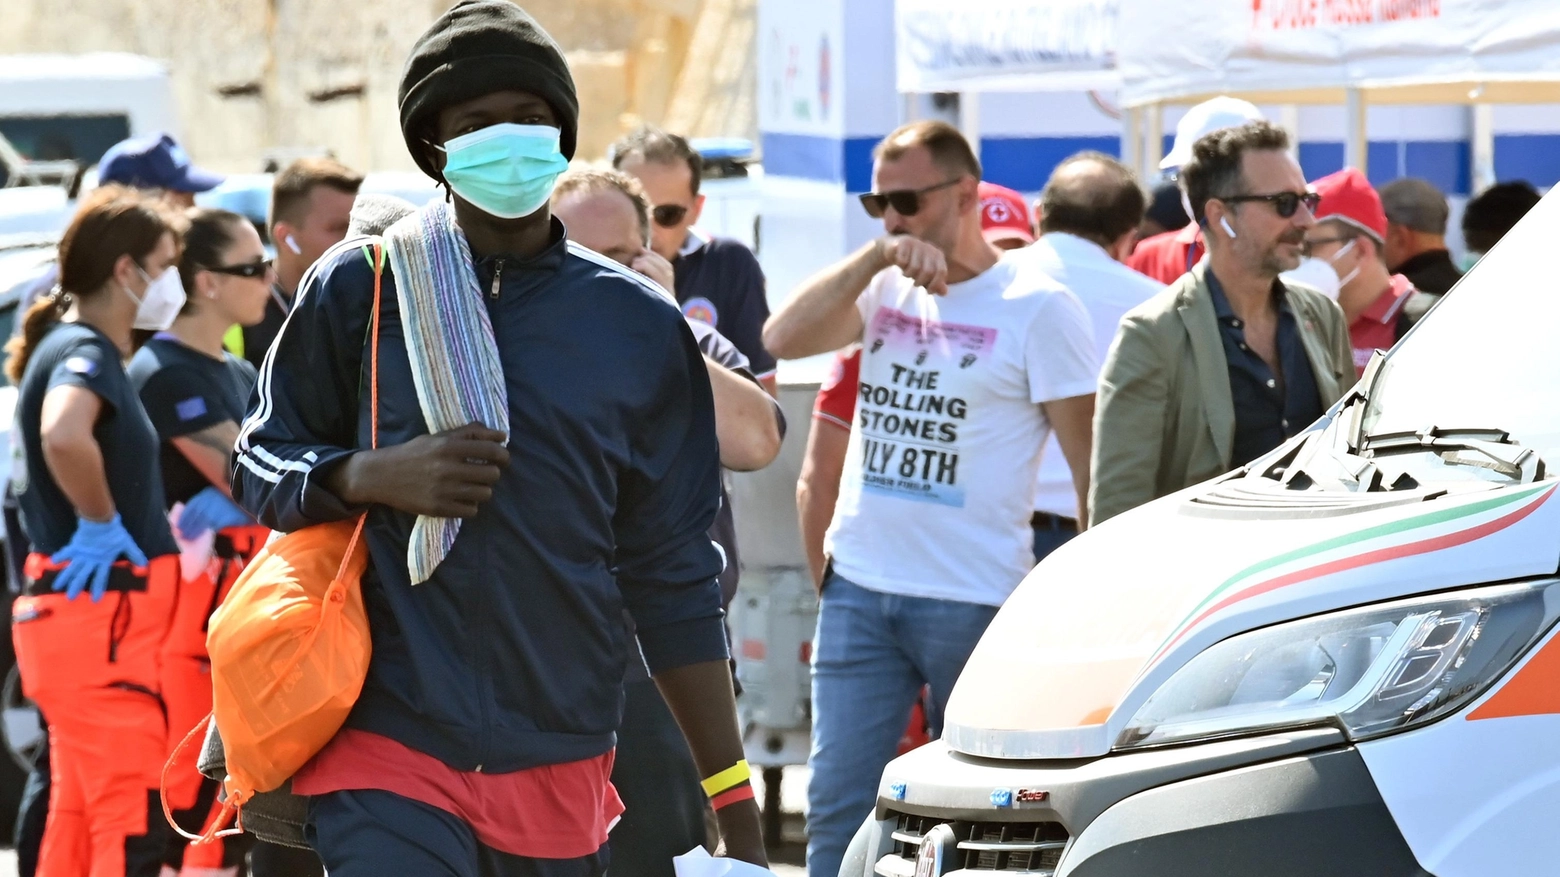 L’emergenza migranti  Previsti nuovi arrivi  Accoglienza in crisi  "Ma niente tende"